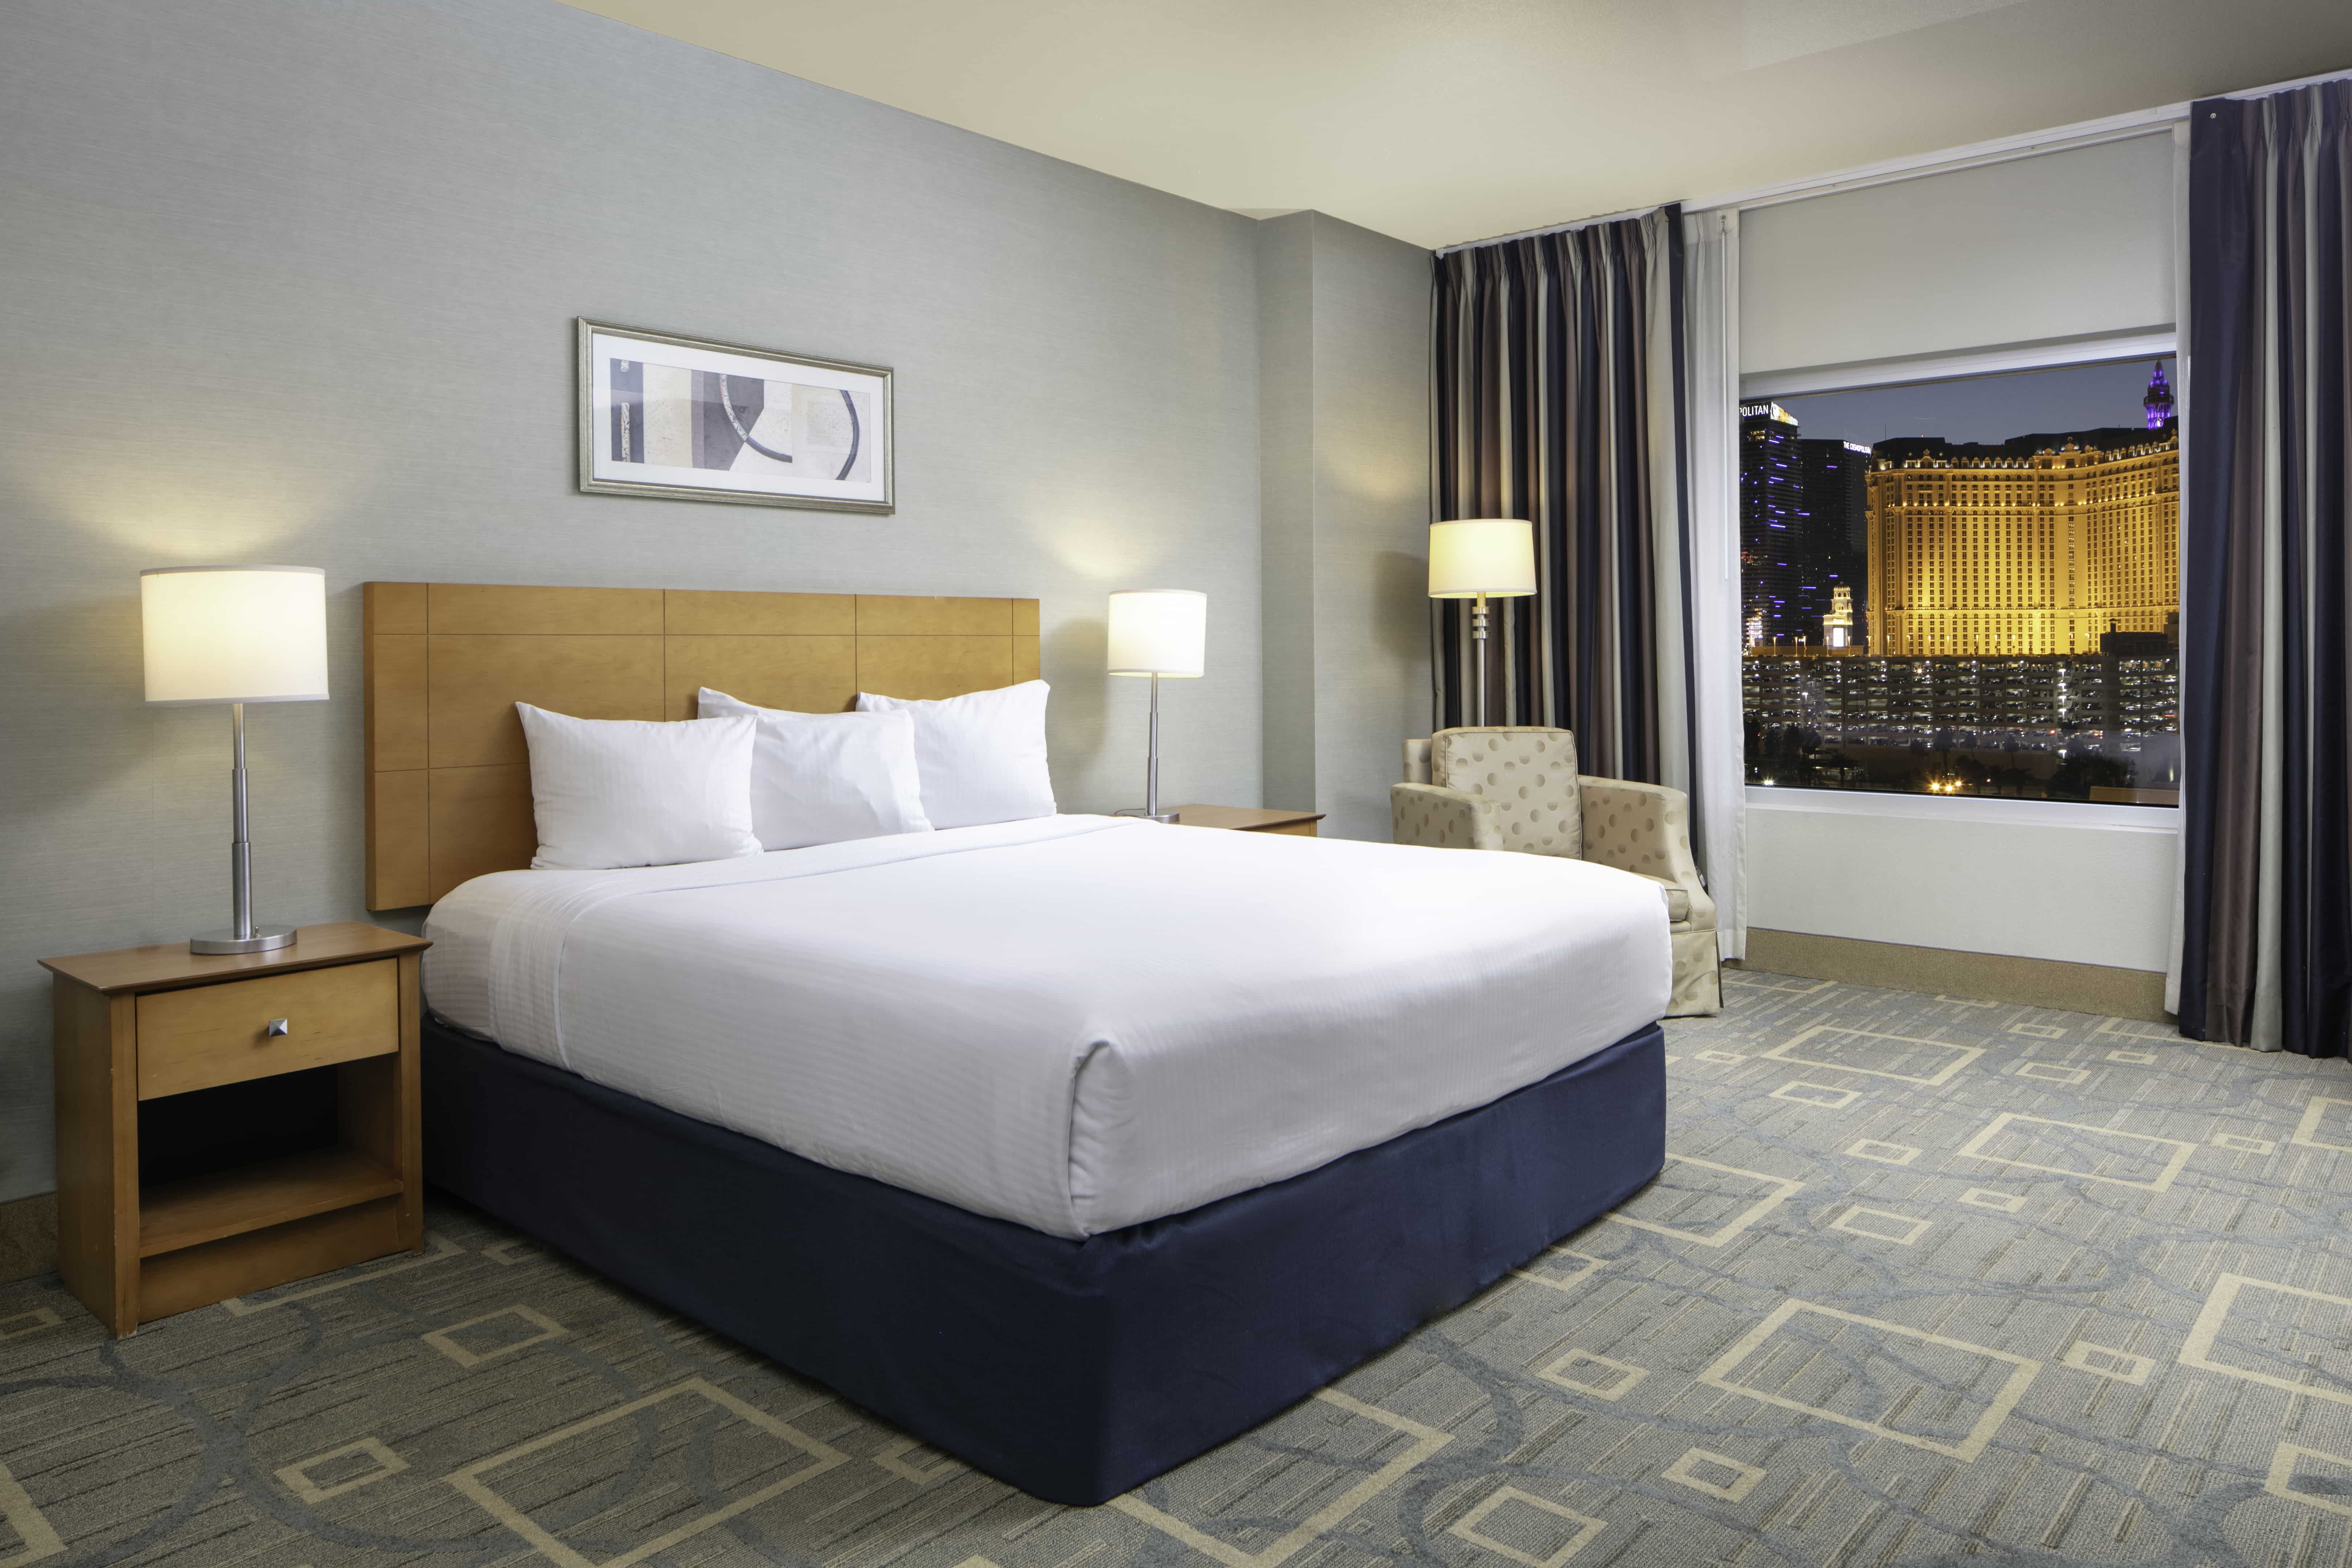 Suites & Hotel Features Platinum Hotel Rooms